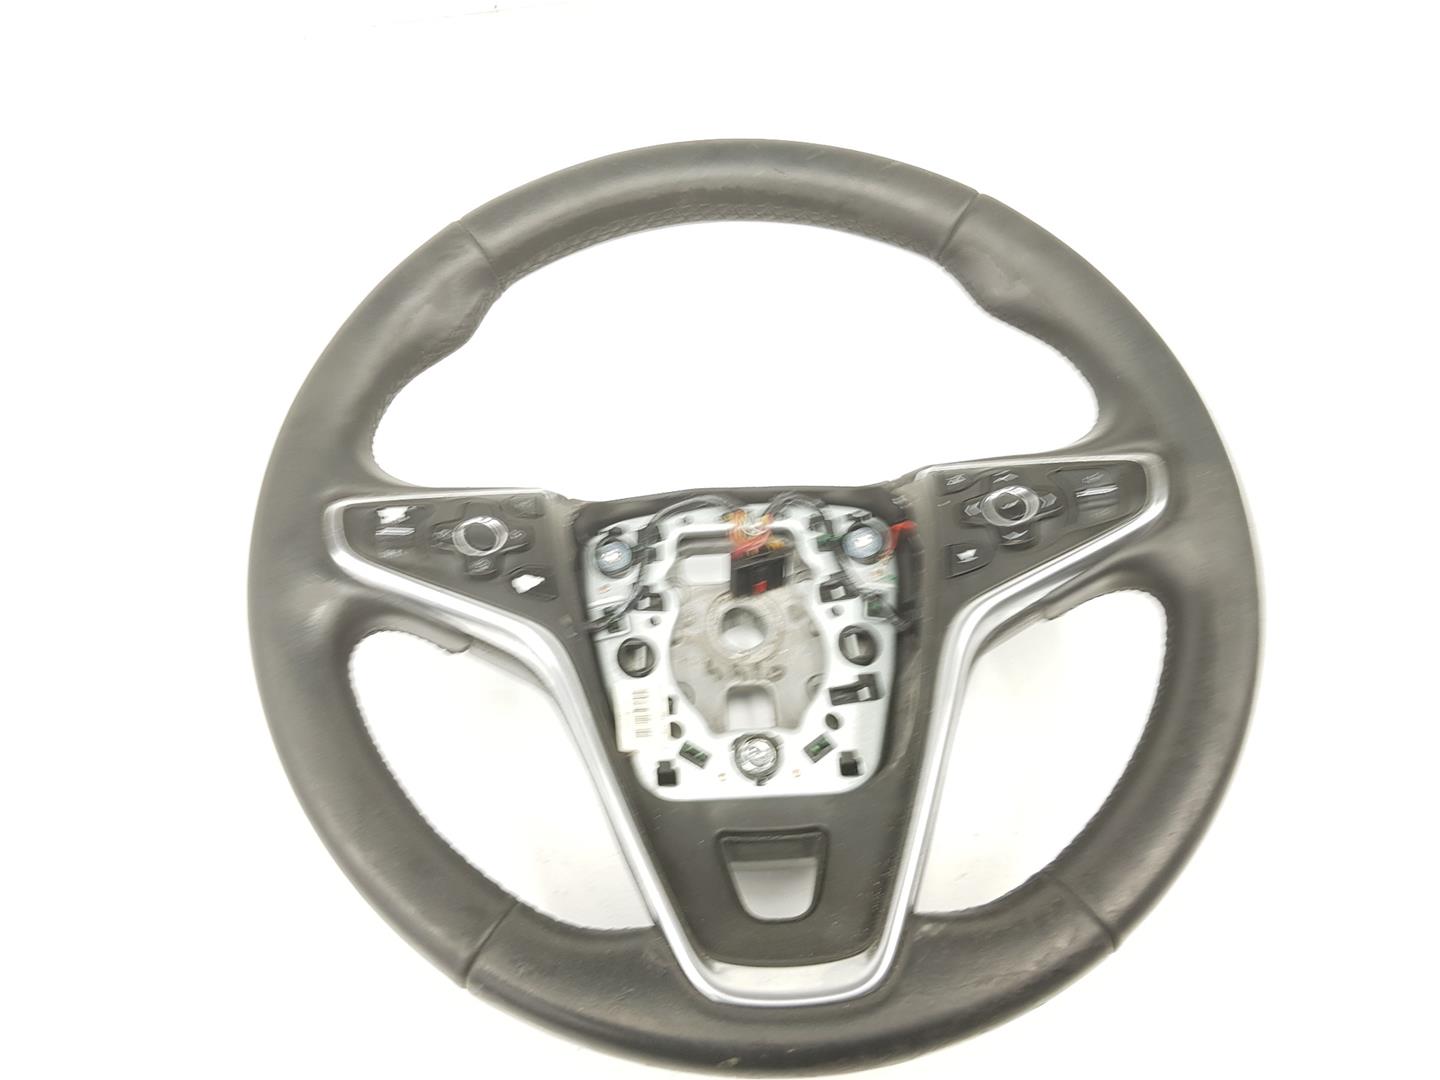 OPEL Insignia A (2008-2016) Steering Wheel 39016158, 23191544 19891083